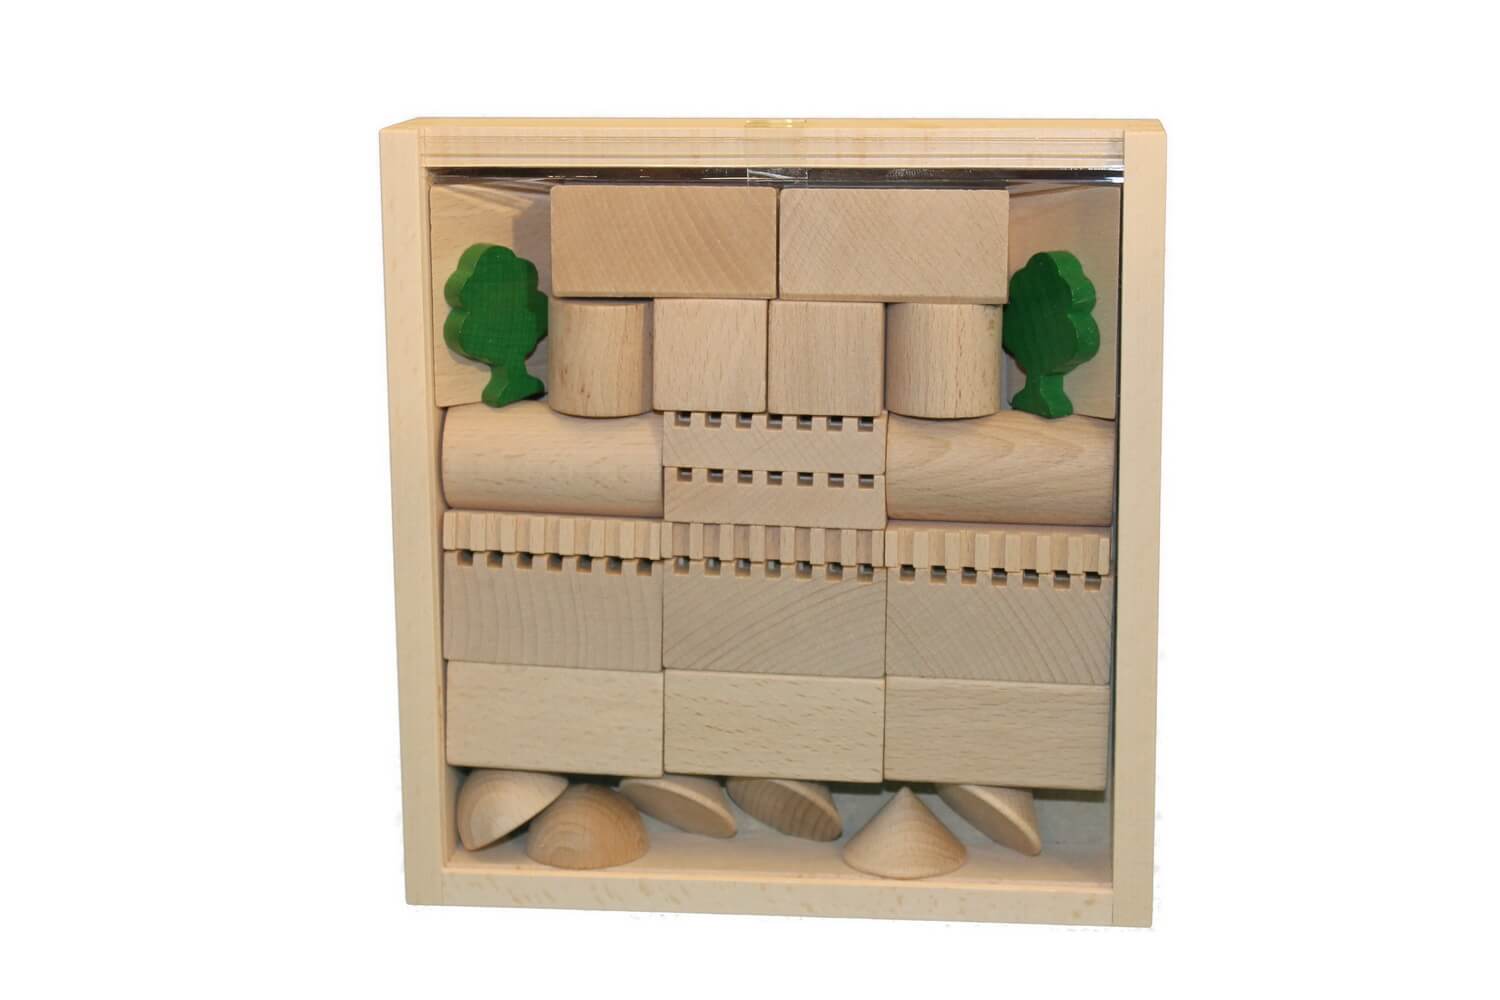 Bausteine und Bauklötze sind eines der ältesten Spielzeuge für Kinder.&nbsp;Der Baukasten Architektur Nr. 2 bietet mit 41 Holzbausteinen viele …